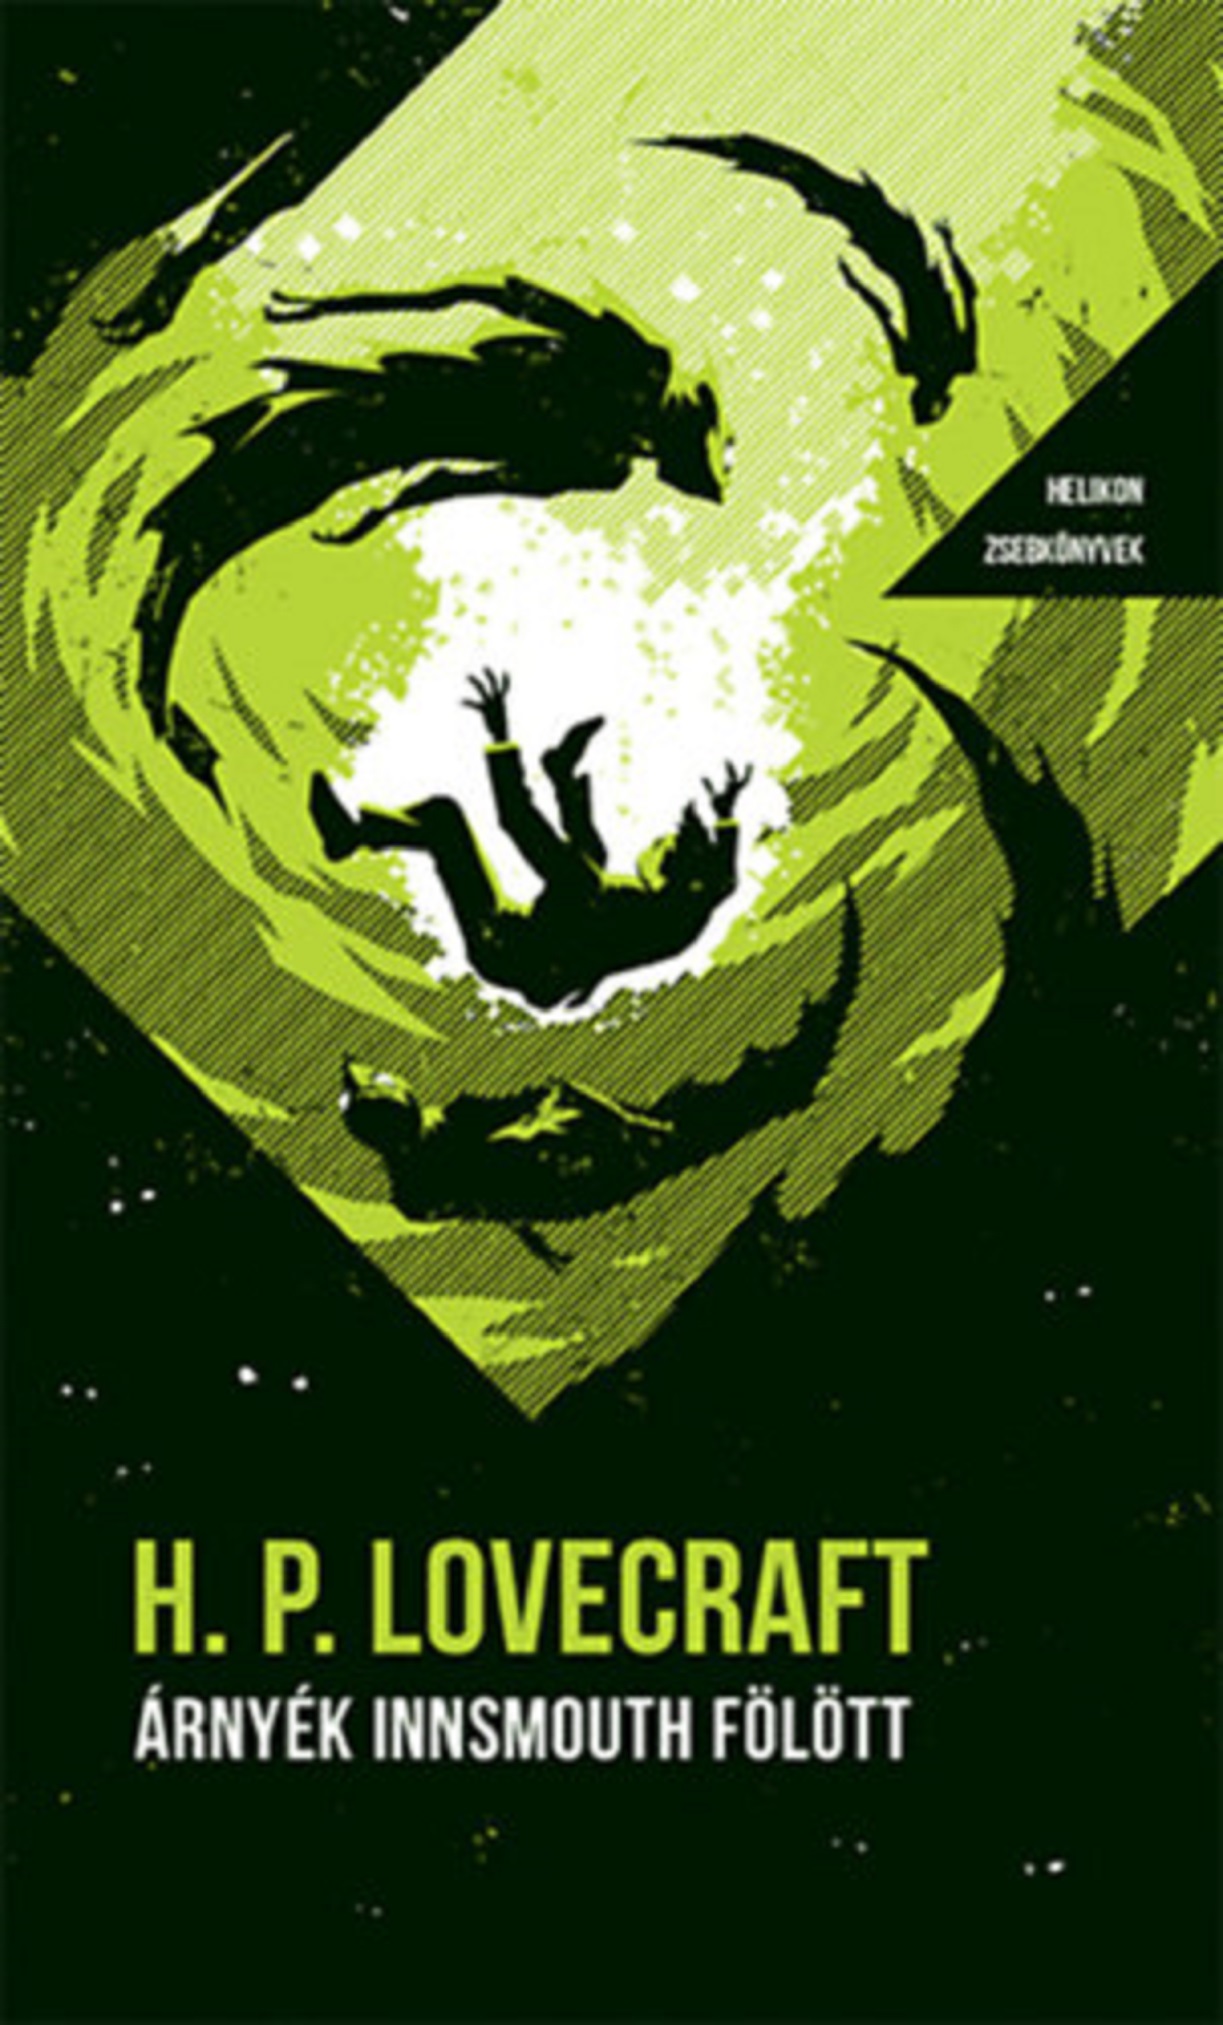 Arnyek Innsmouth folott | H. P. Lovecraft